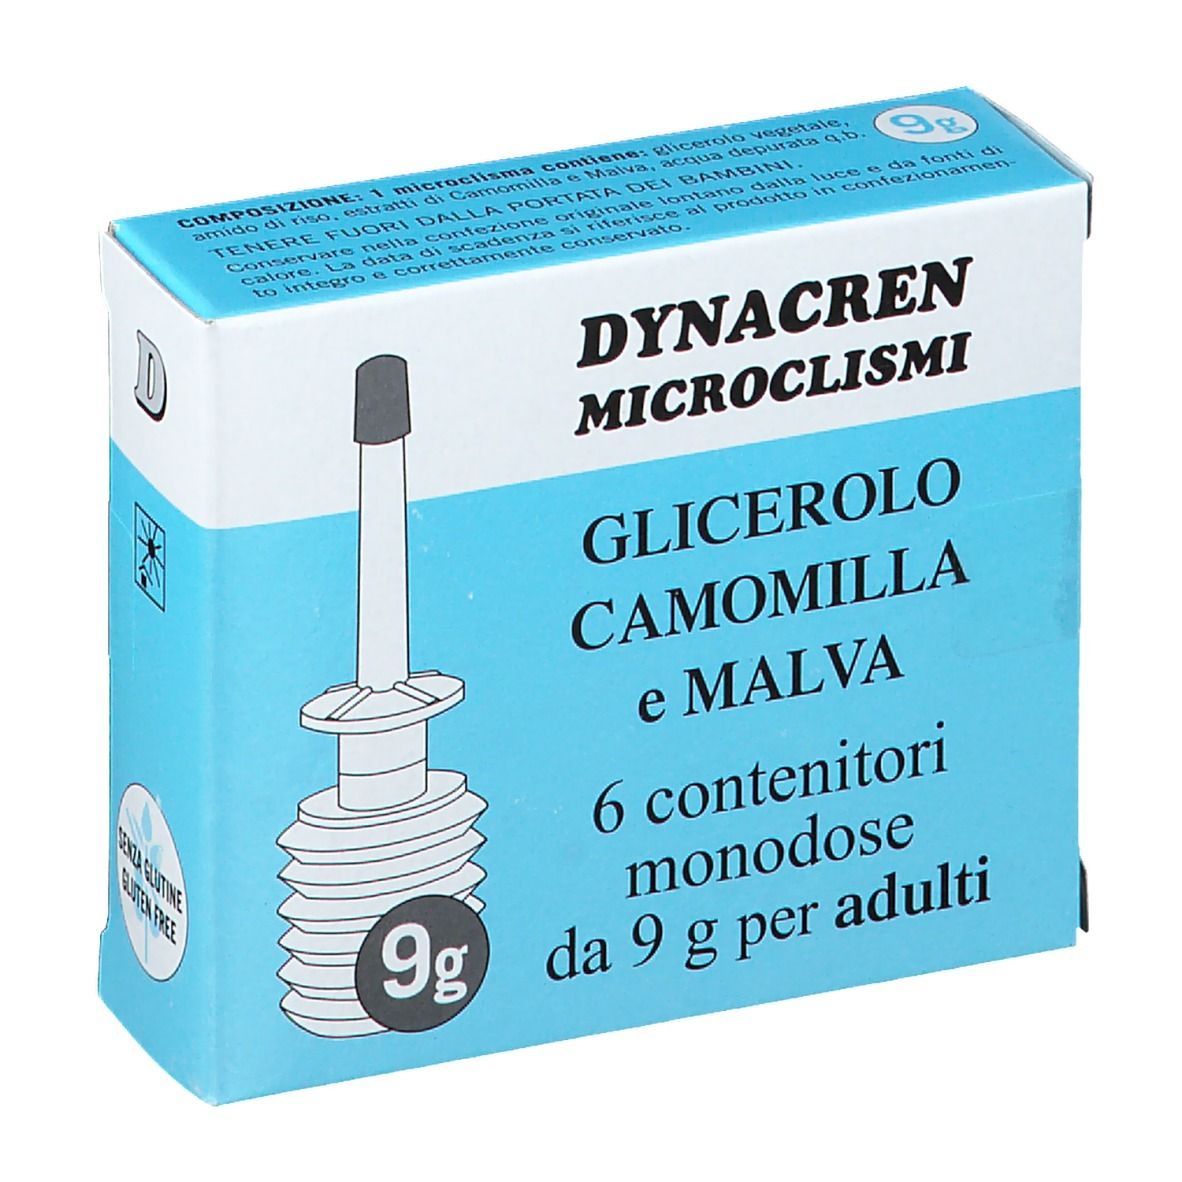 Dynacren Microclism Glicerolo Camomilla e Malva